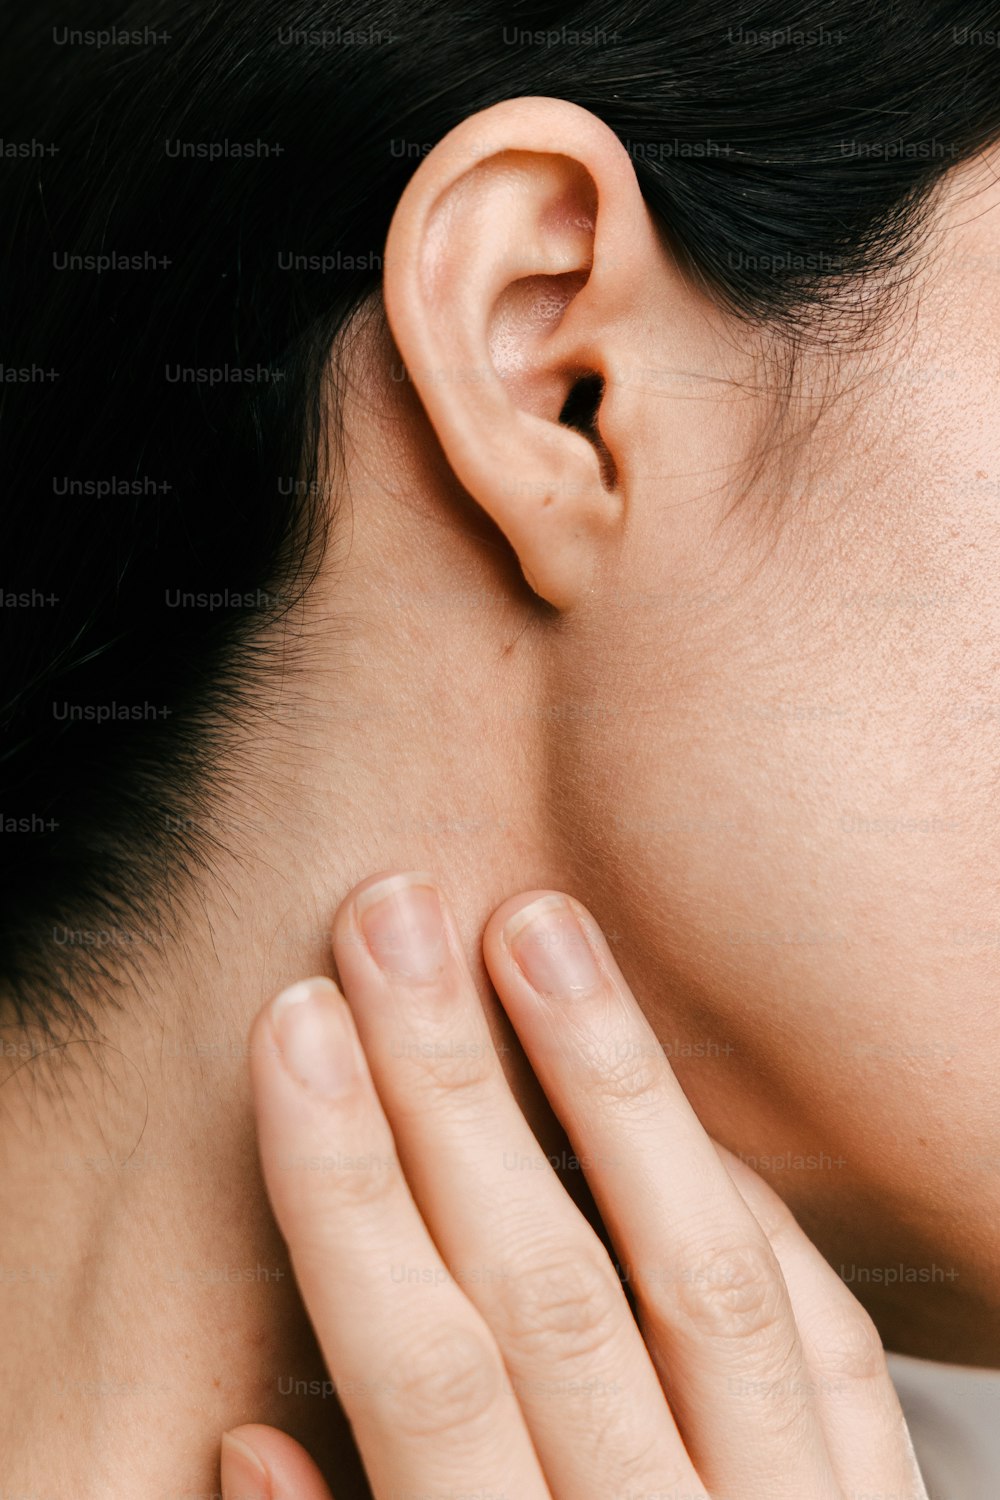 eine Nahaufnahme einer Person, die ihr Ohr berührt